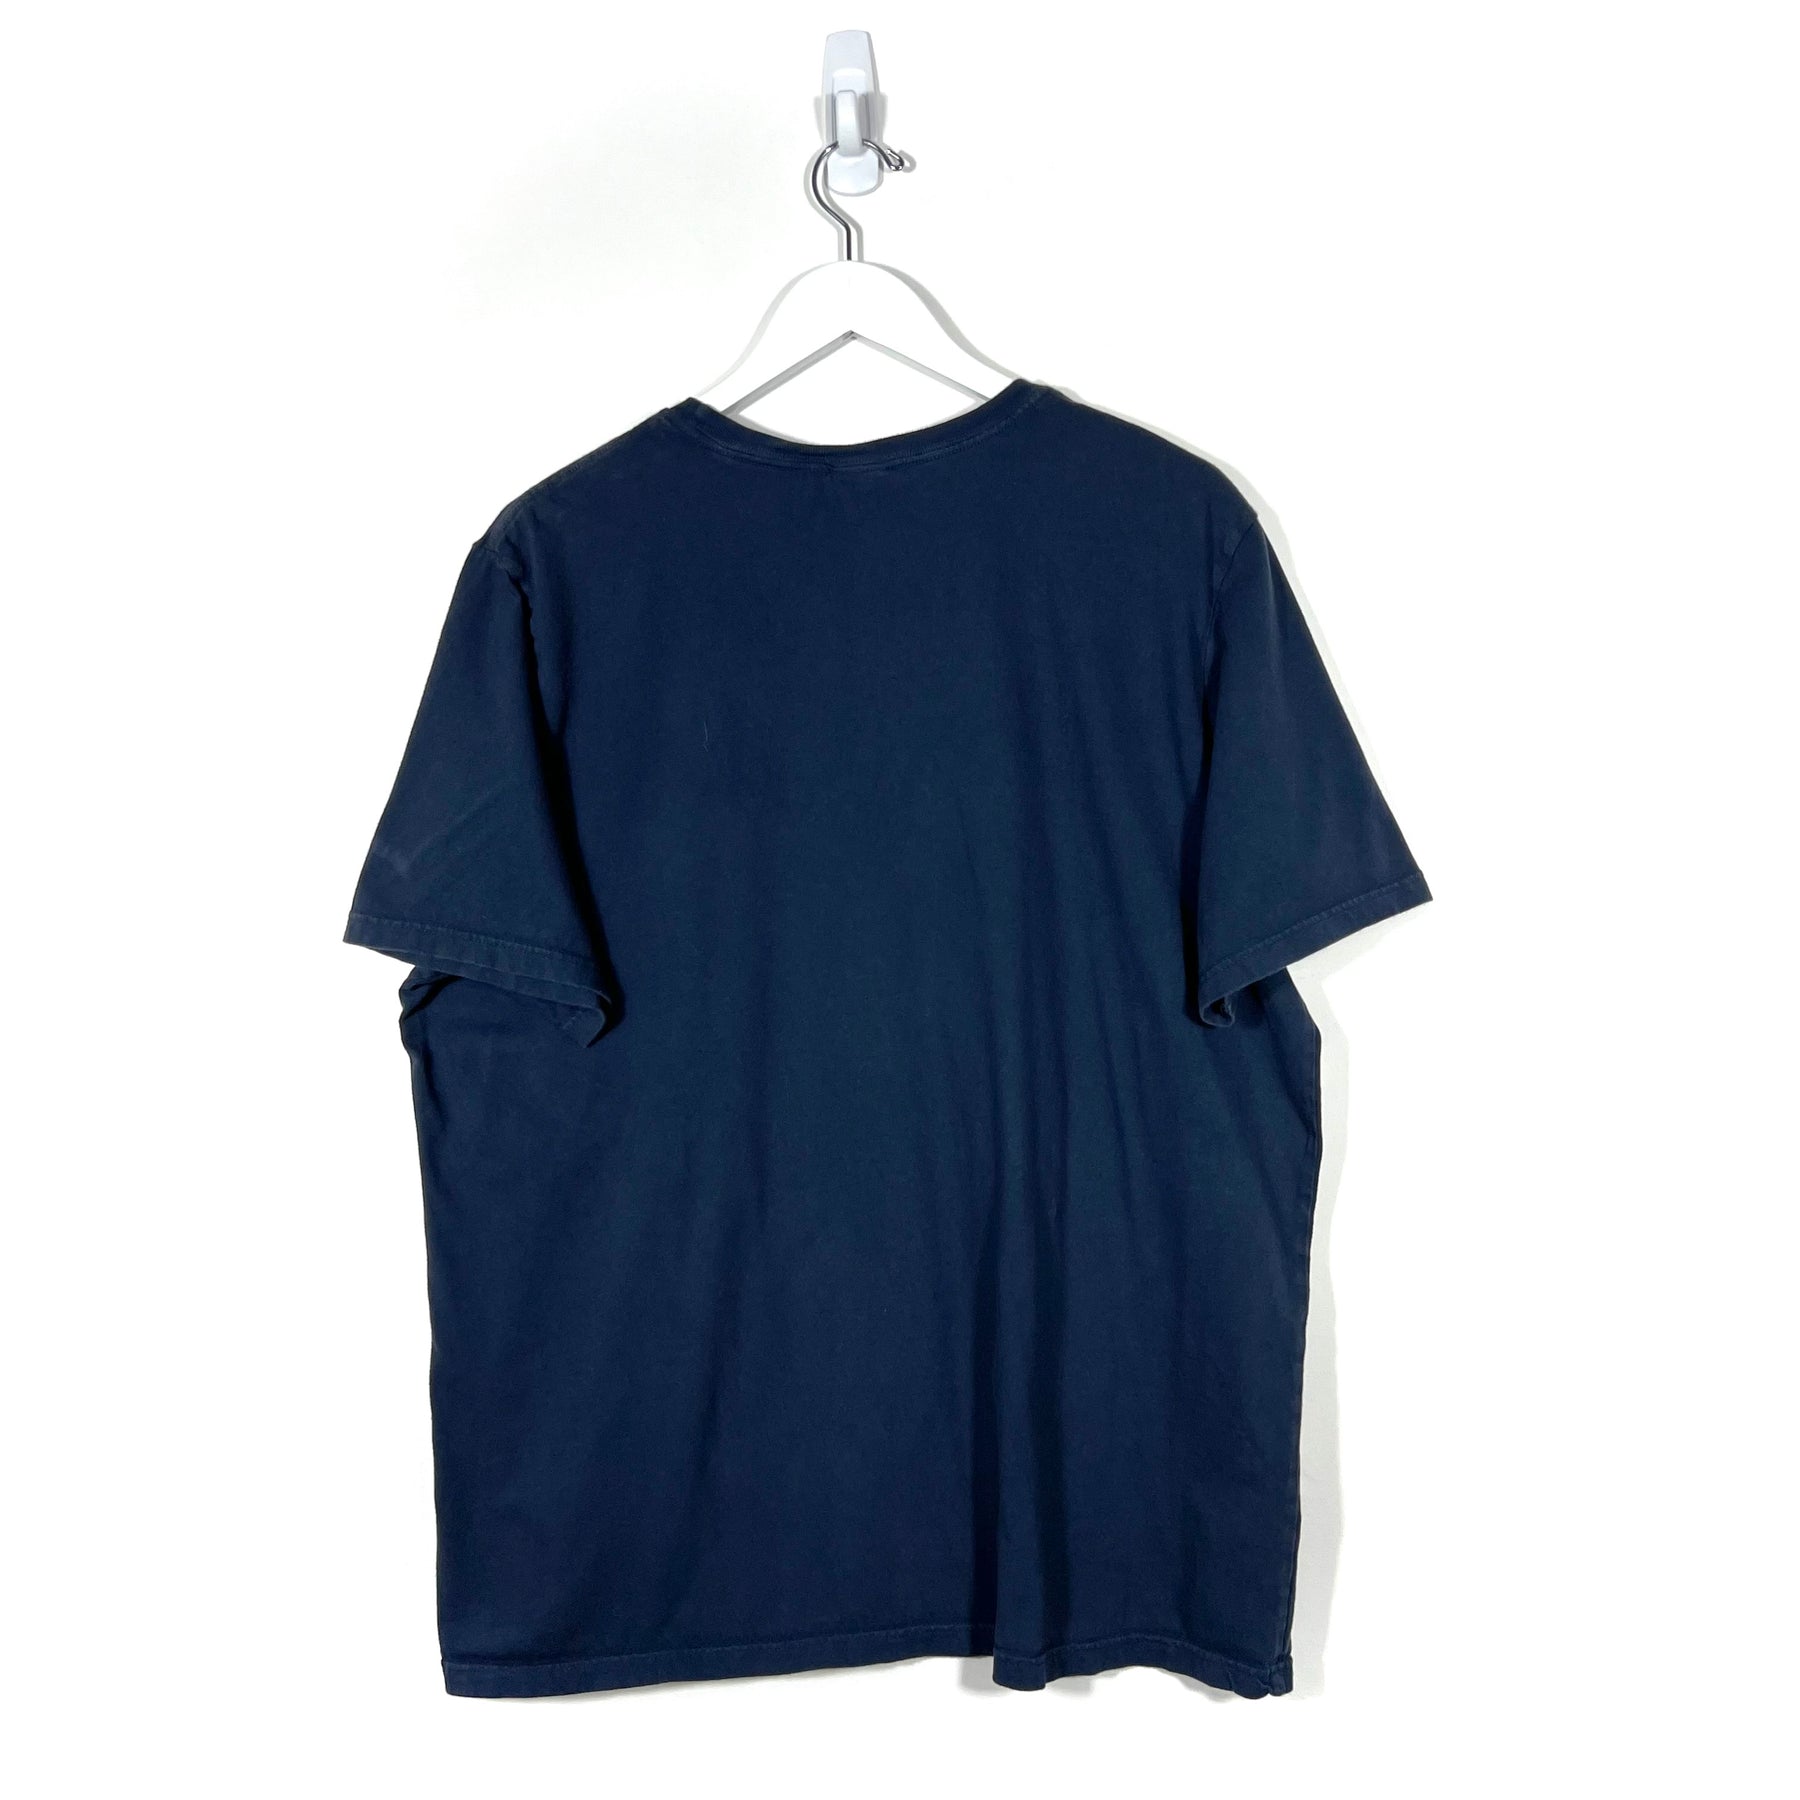 Tommy Hilfiger T-Shirt - Women's XL